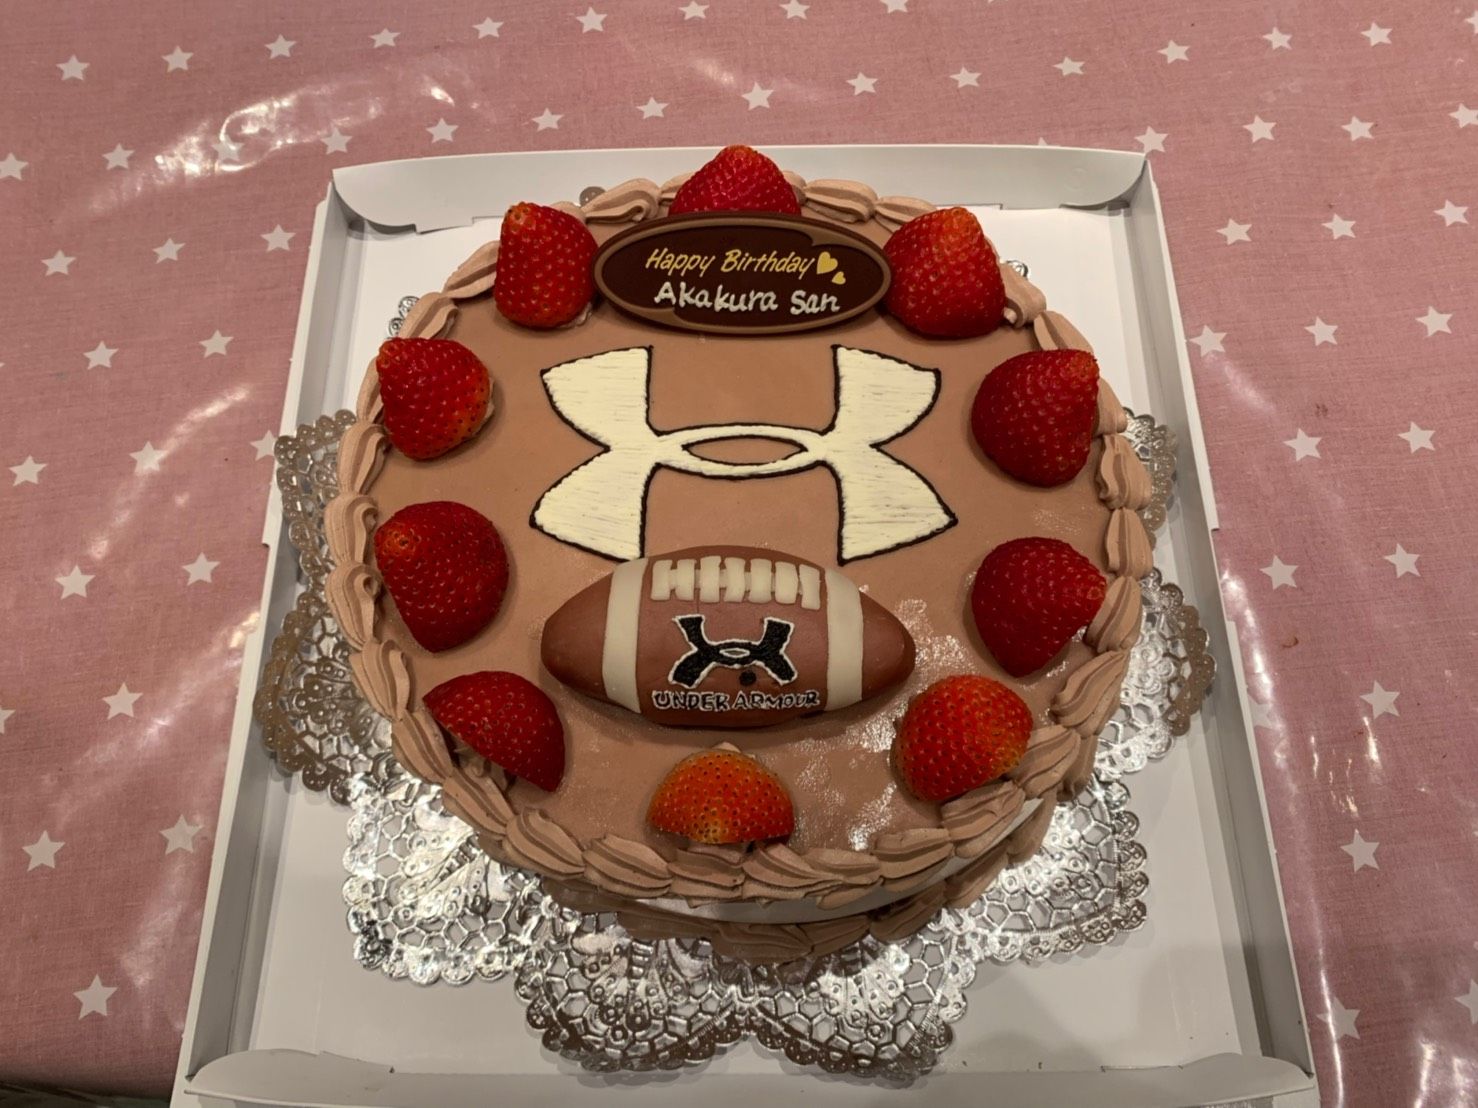 ラグビーボールケーキ宅配川崎 デコレーションケーキのデリバリーショップ 楽天ブログ